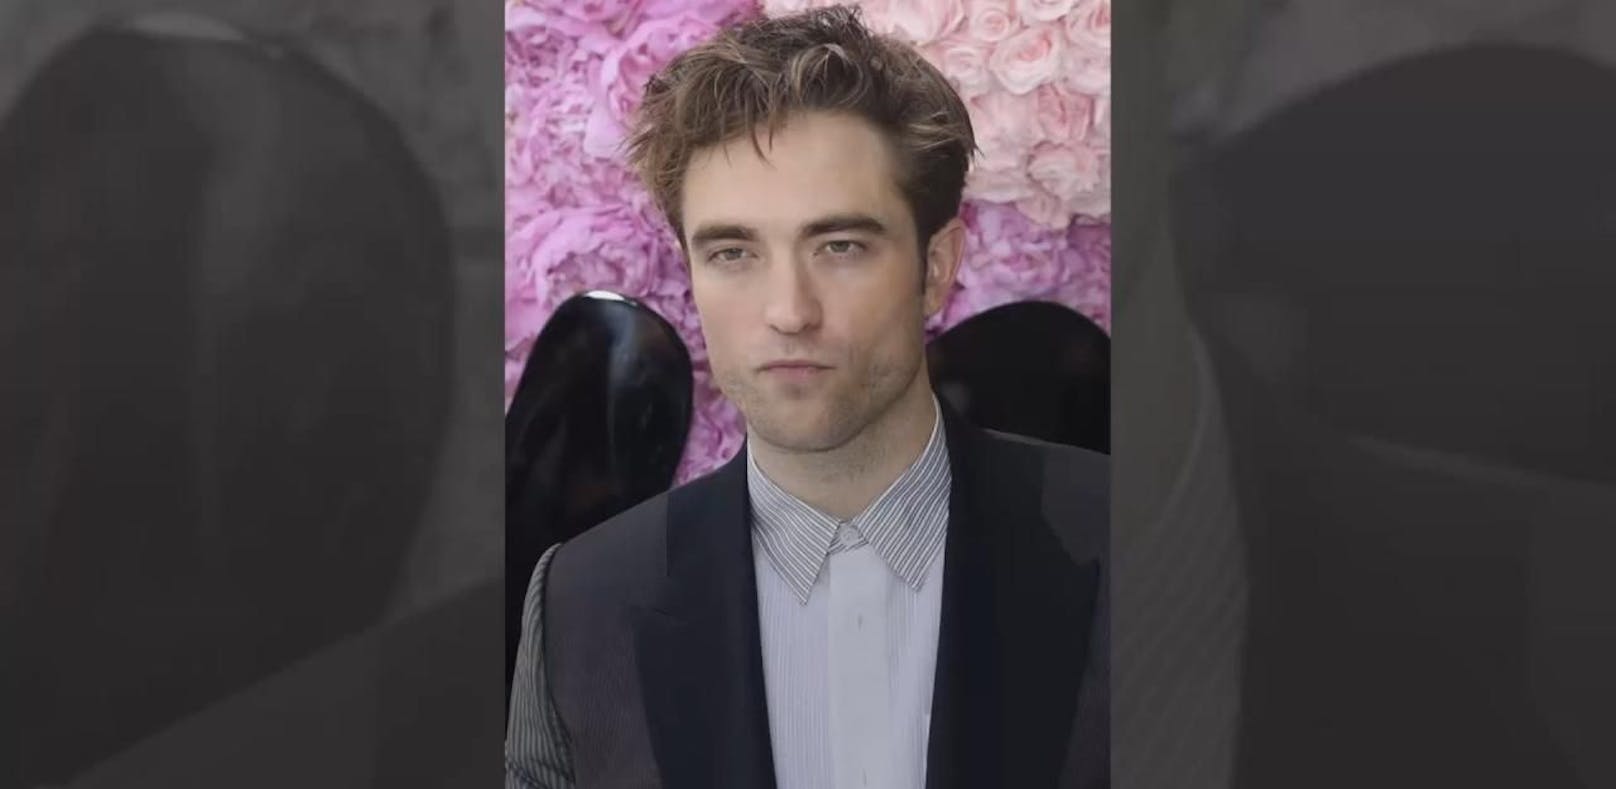 Hat Robert Pattinson (32) etwa eine neue Freundin?